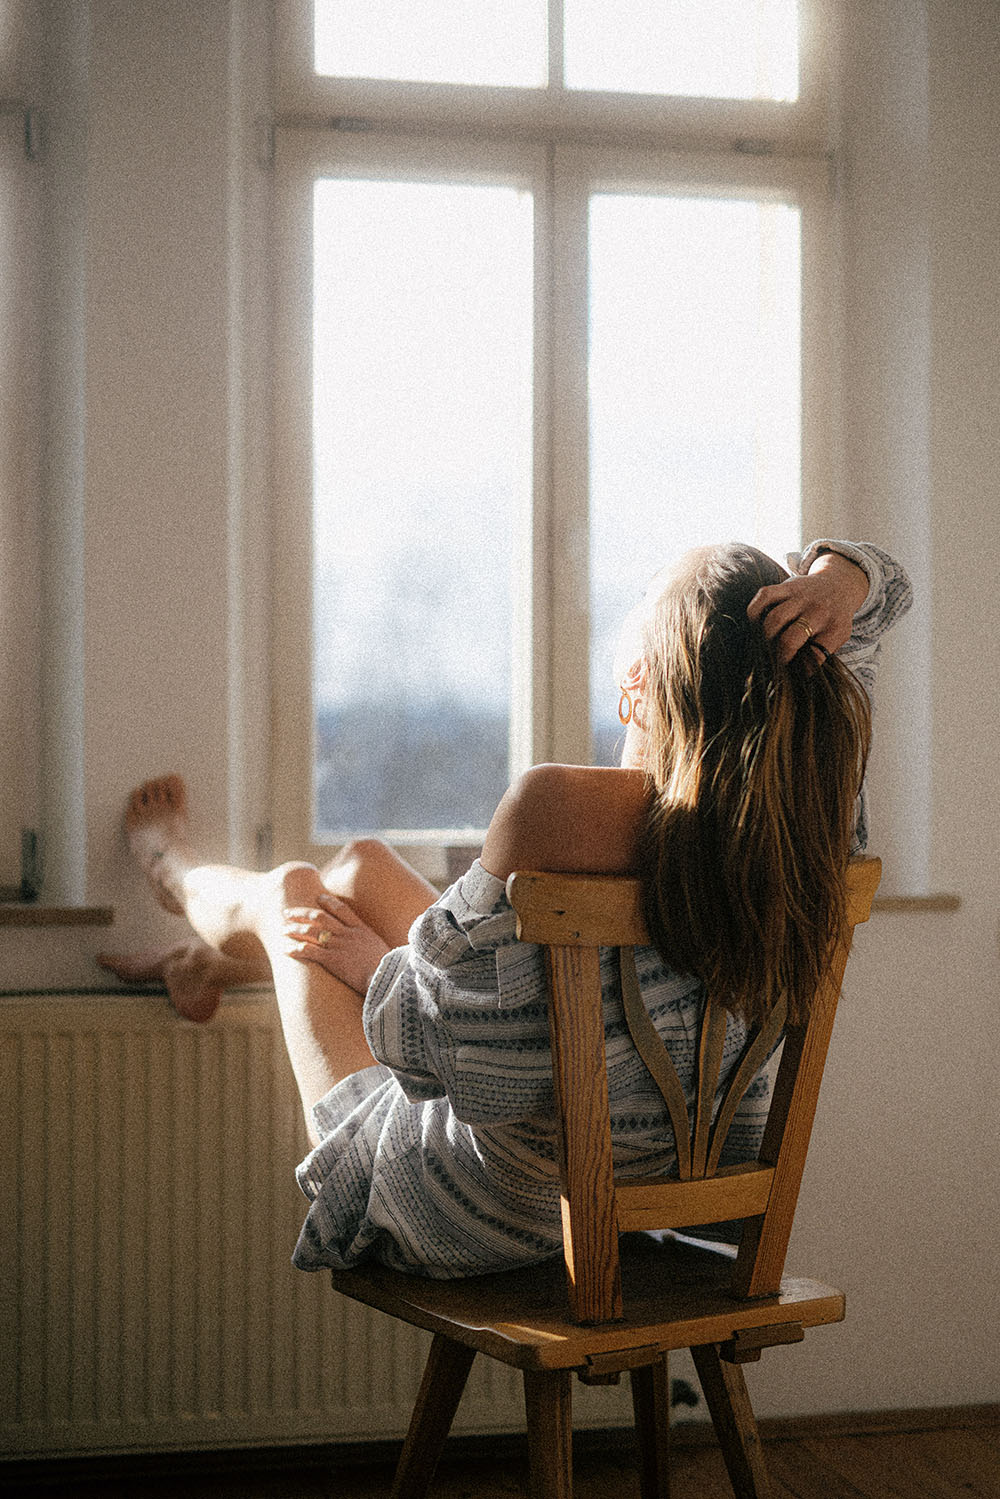 thói quen ngủ cô gái bên cửa sổ Unsplash / Adrian Infernus